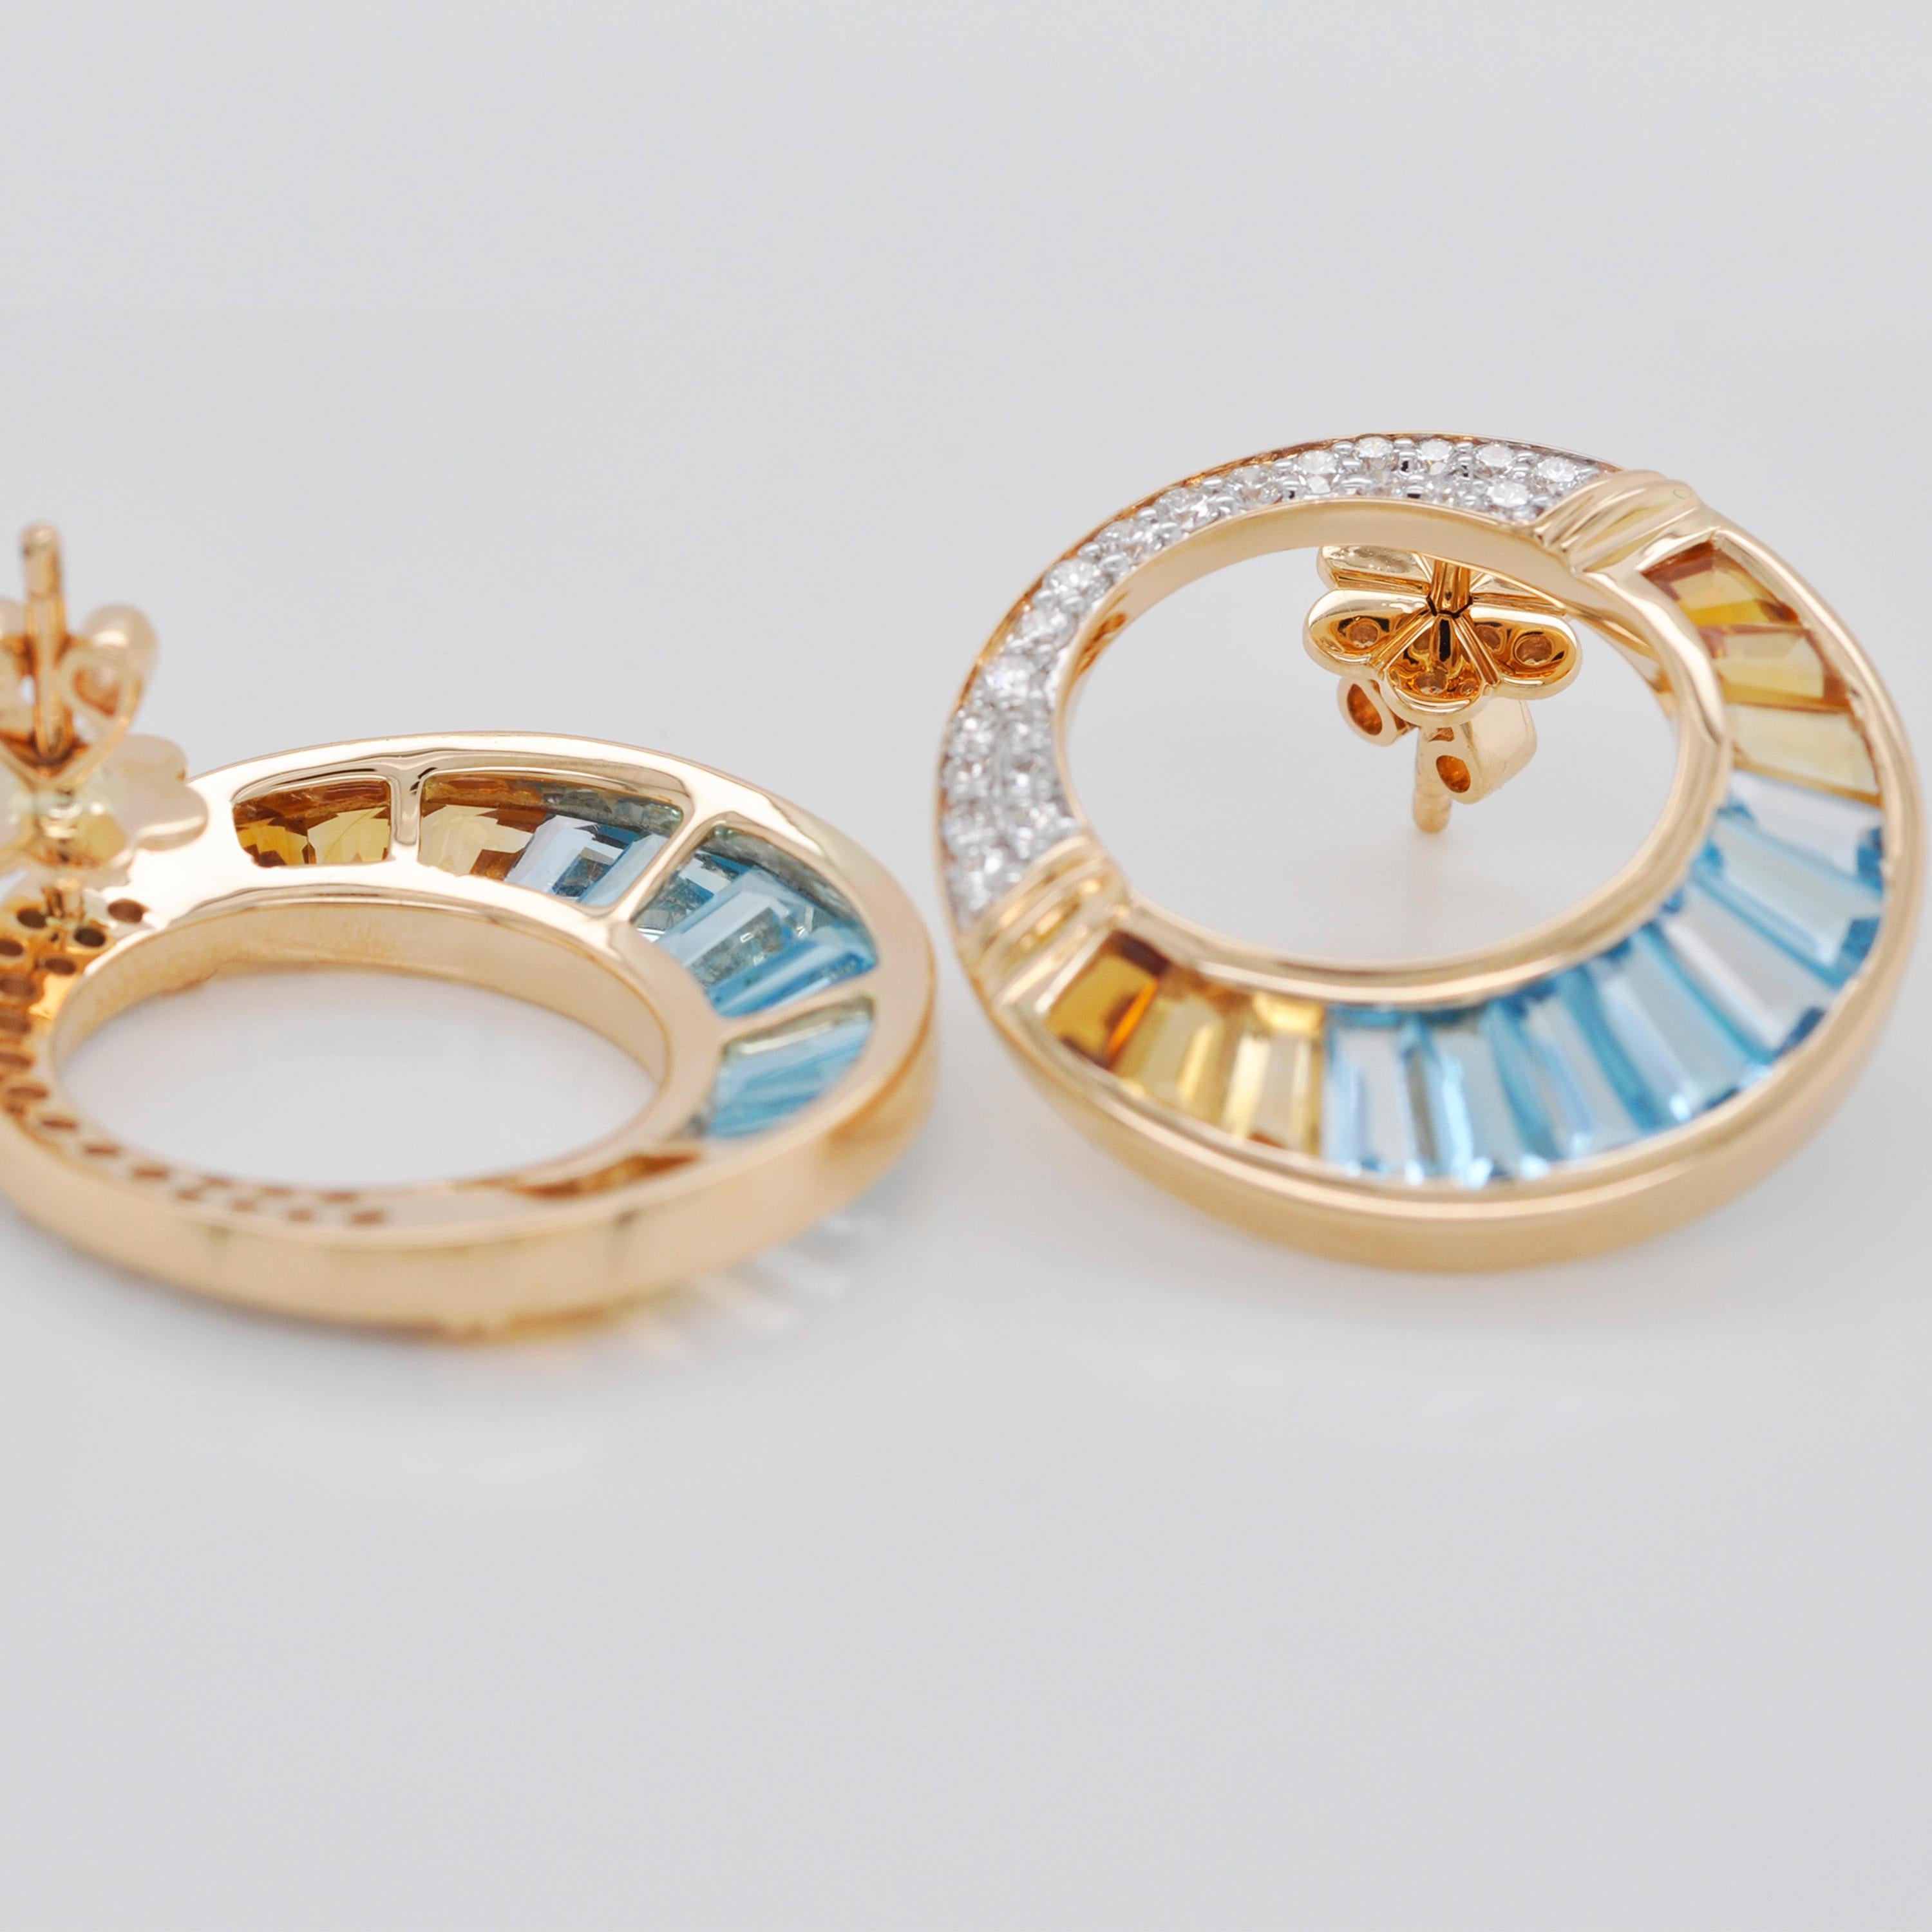 18K Gold Swiss Blue Topaz Citrine Baguette Diamond Pendant Brooch Earrings Set For Sale 7